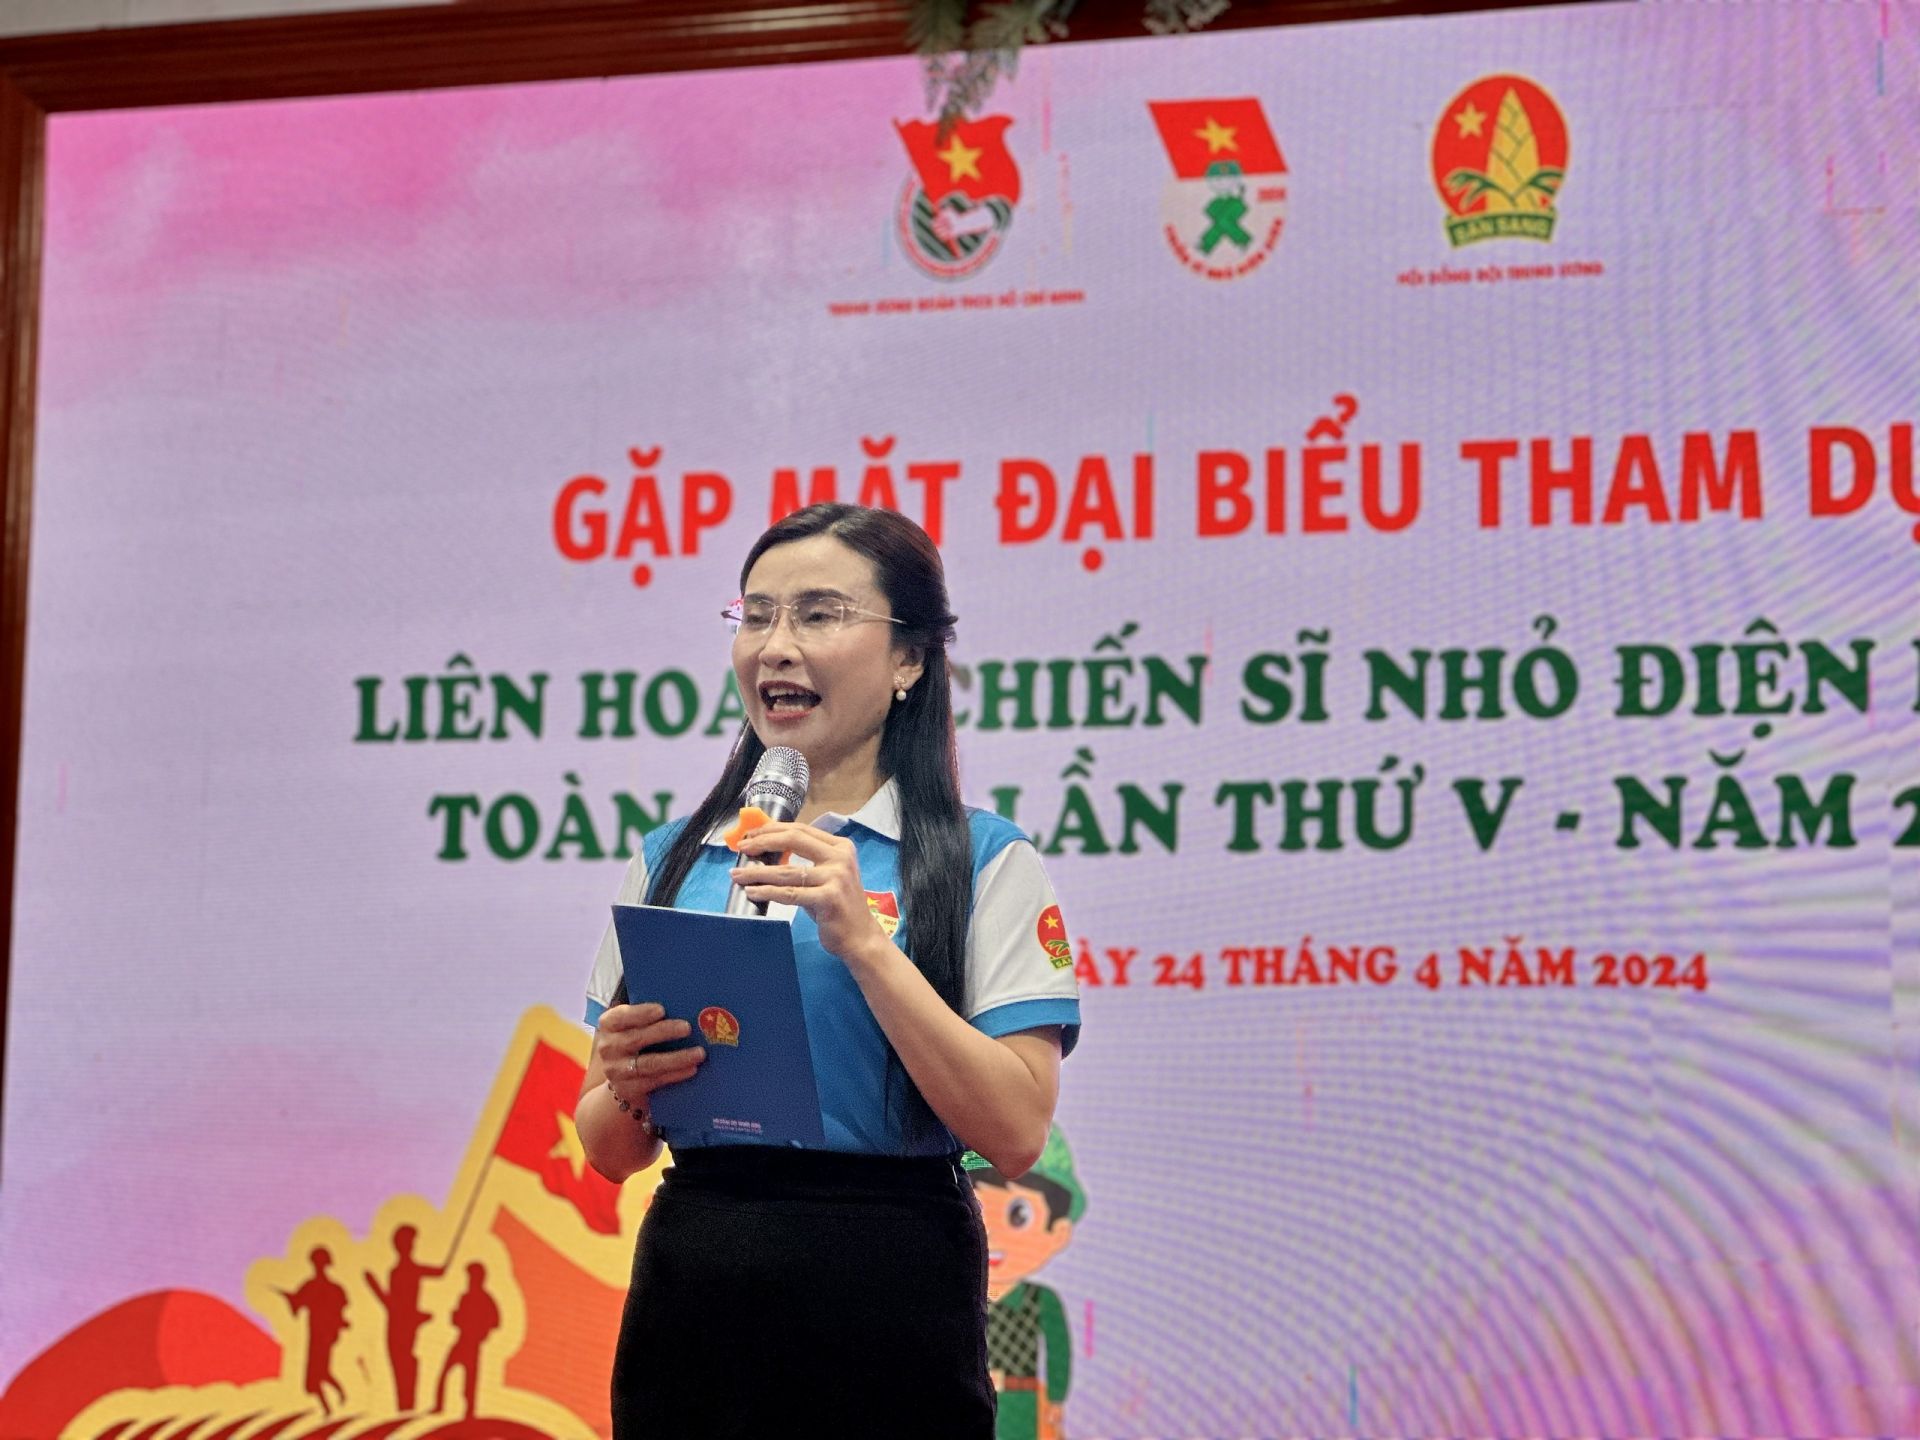 Bí thư T.Ư Đoàn Nguyễn Phạm Duy Trang phát biểu tại chương trình.